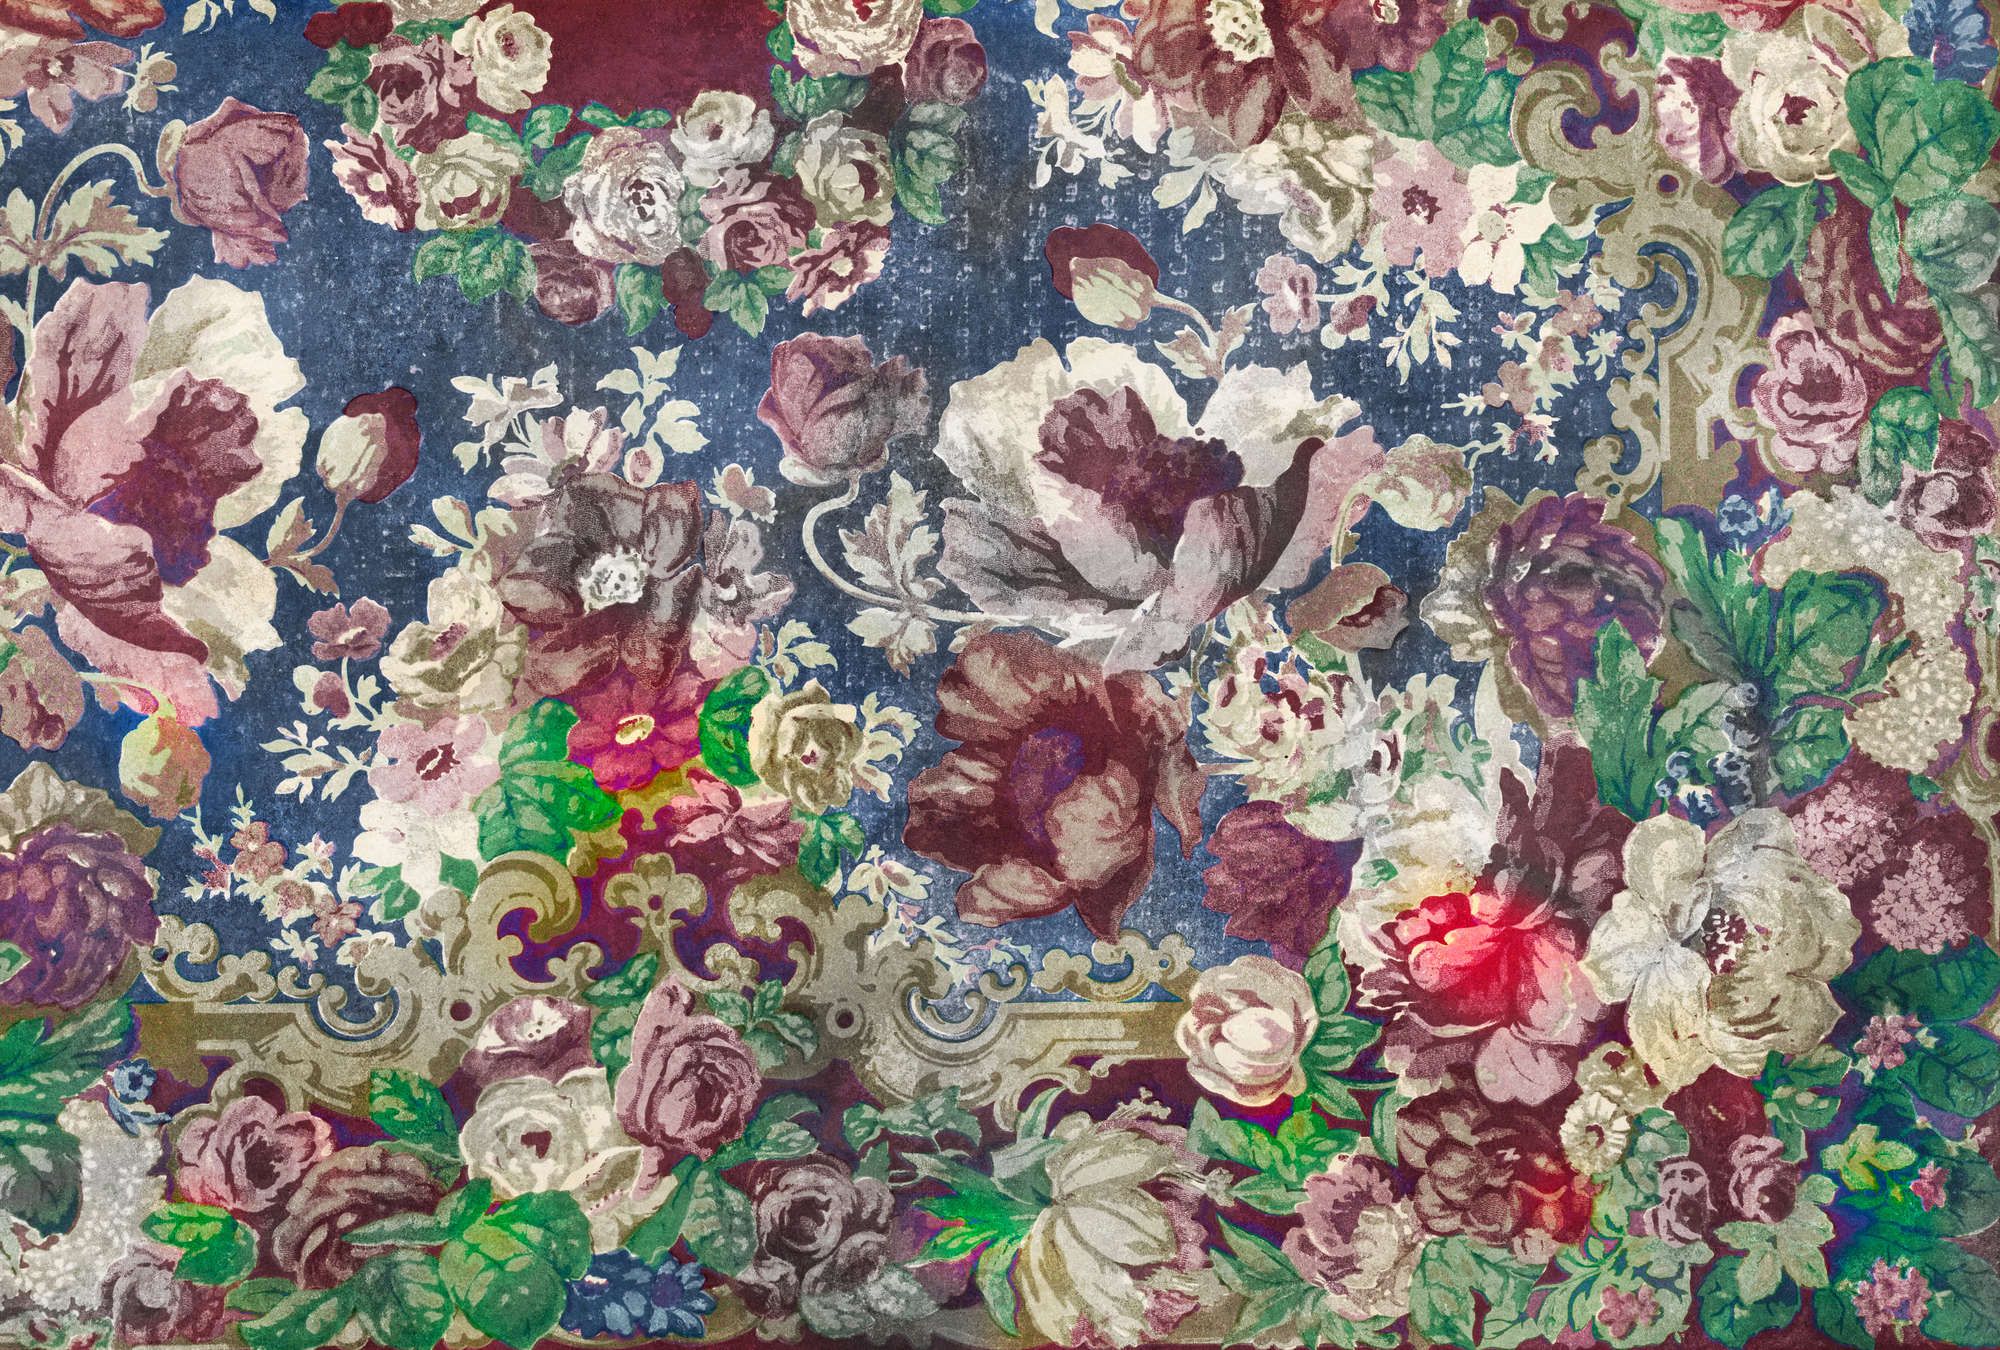             Fotomural »carmente 2« - Motivo floral de estilo clásico sobre una textura de yeso vintage - Coloreado | Material no tejido de alta calidad, liso y ligeramente brillante.
        